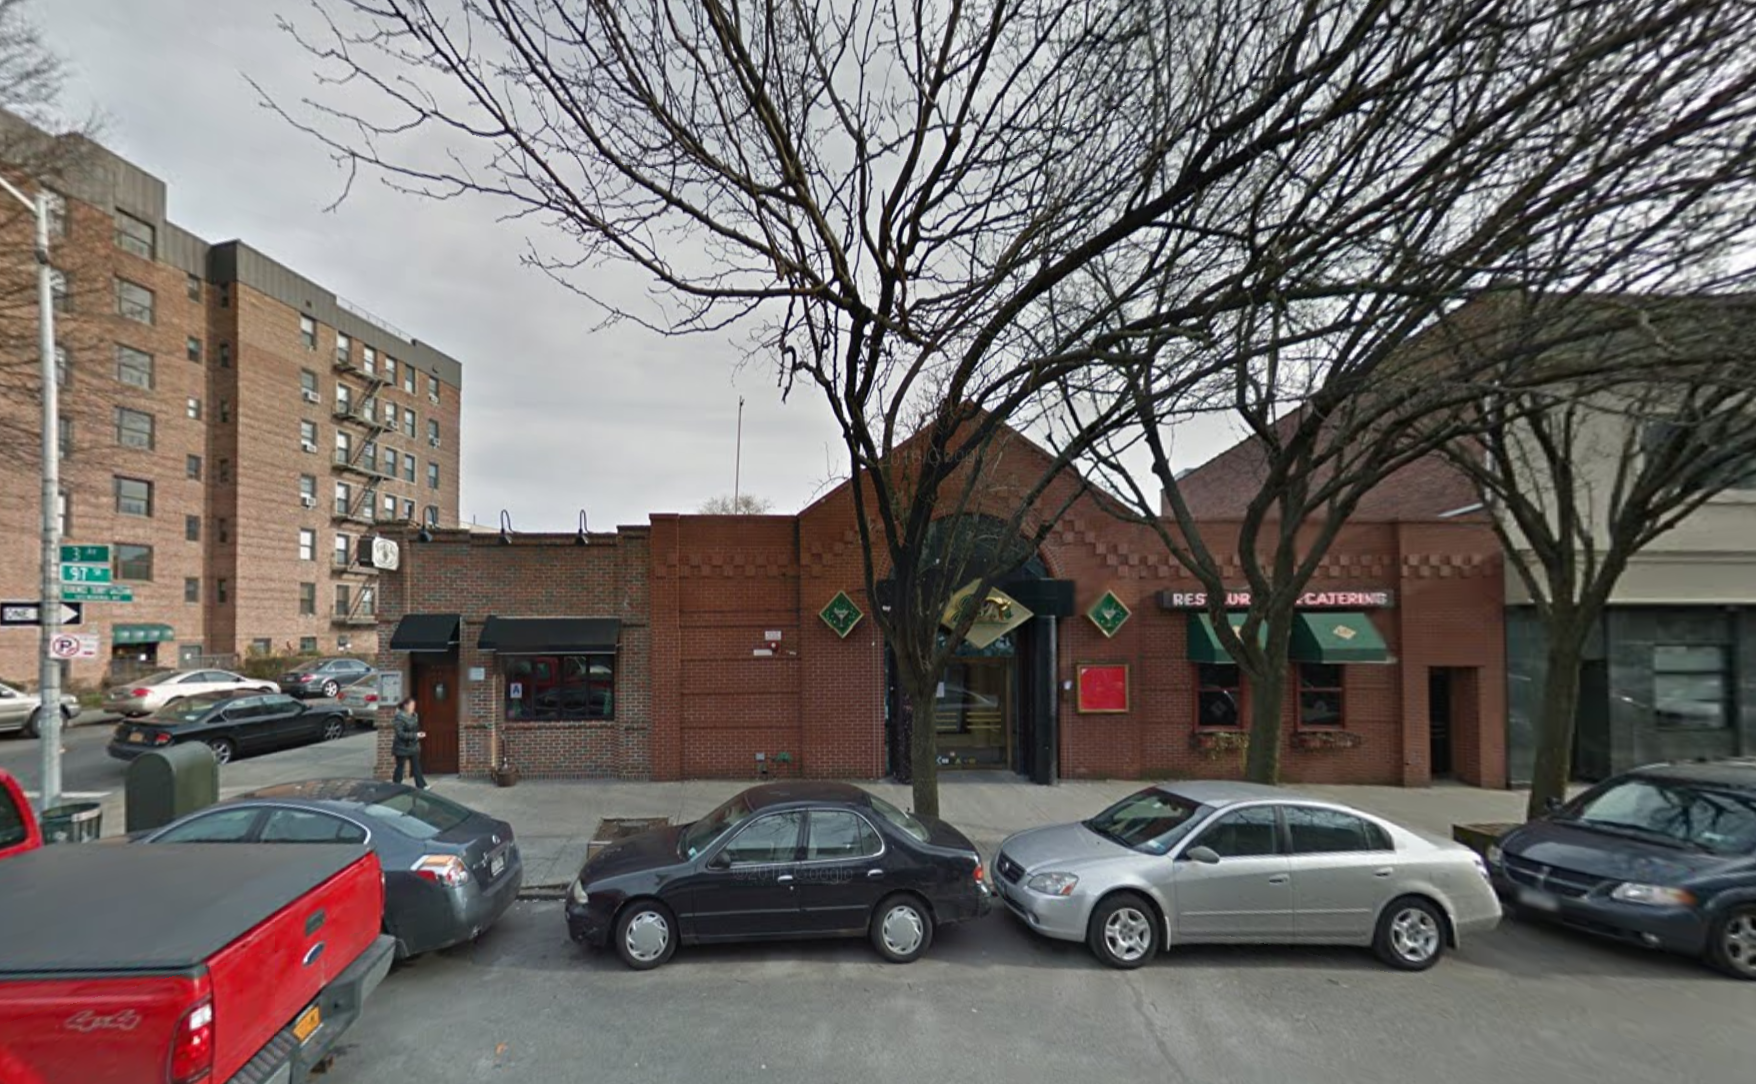 9701 Third Avenue, image via Google Maps